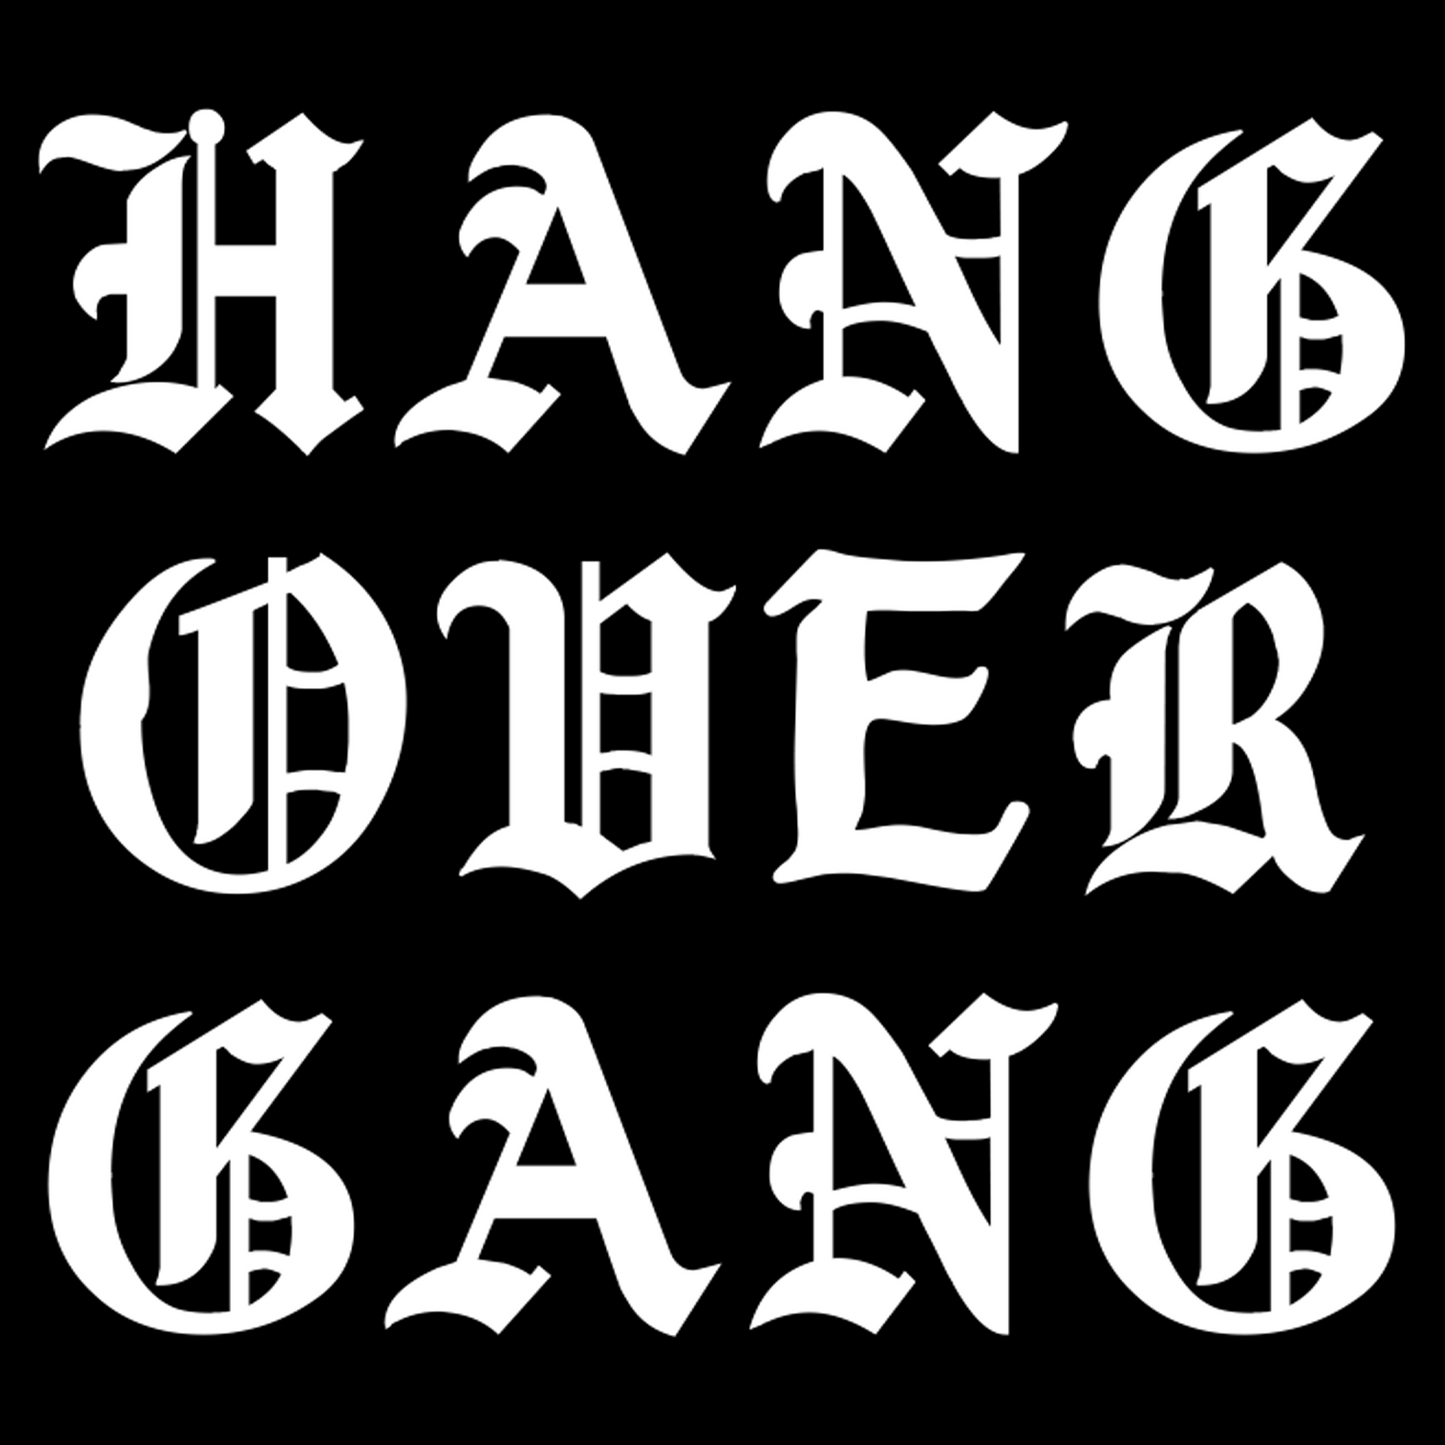 "Hang Over Gang" Window Decal